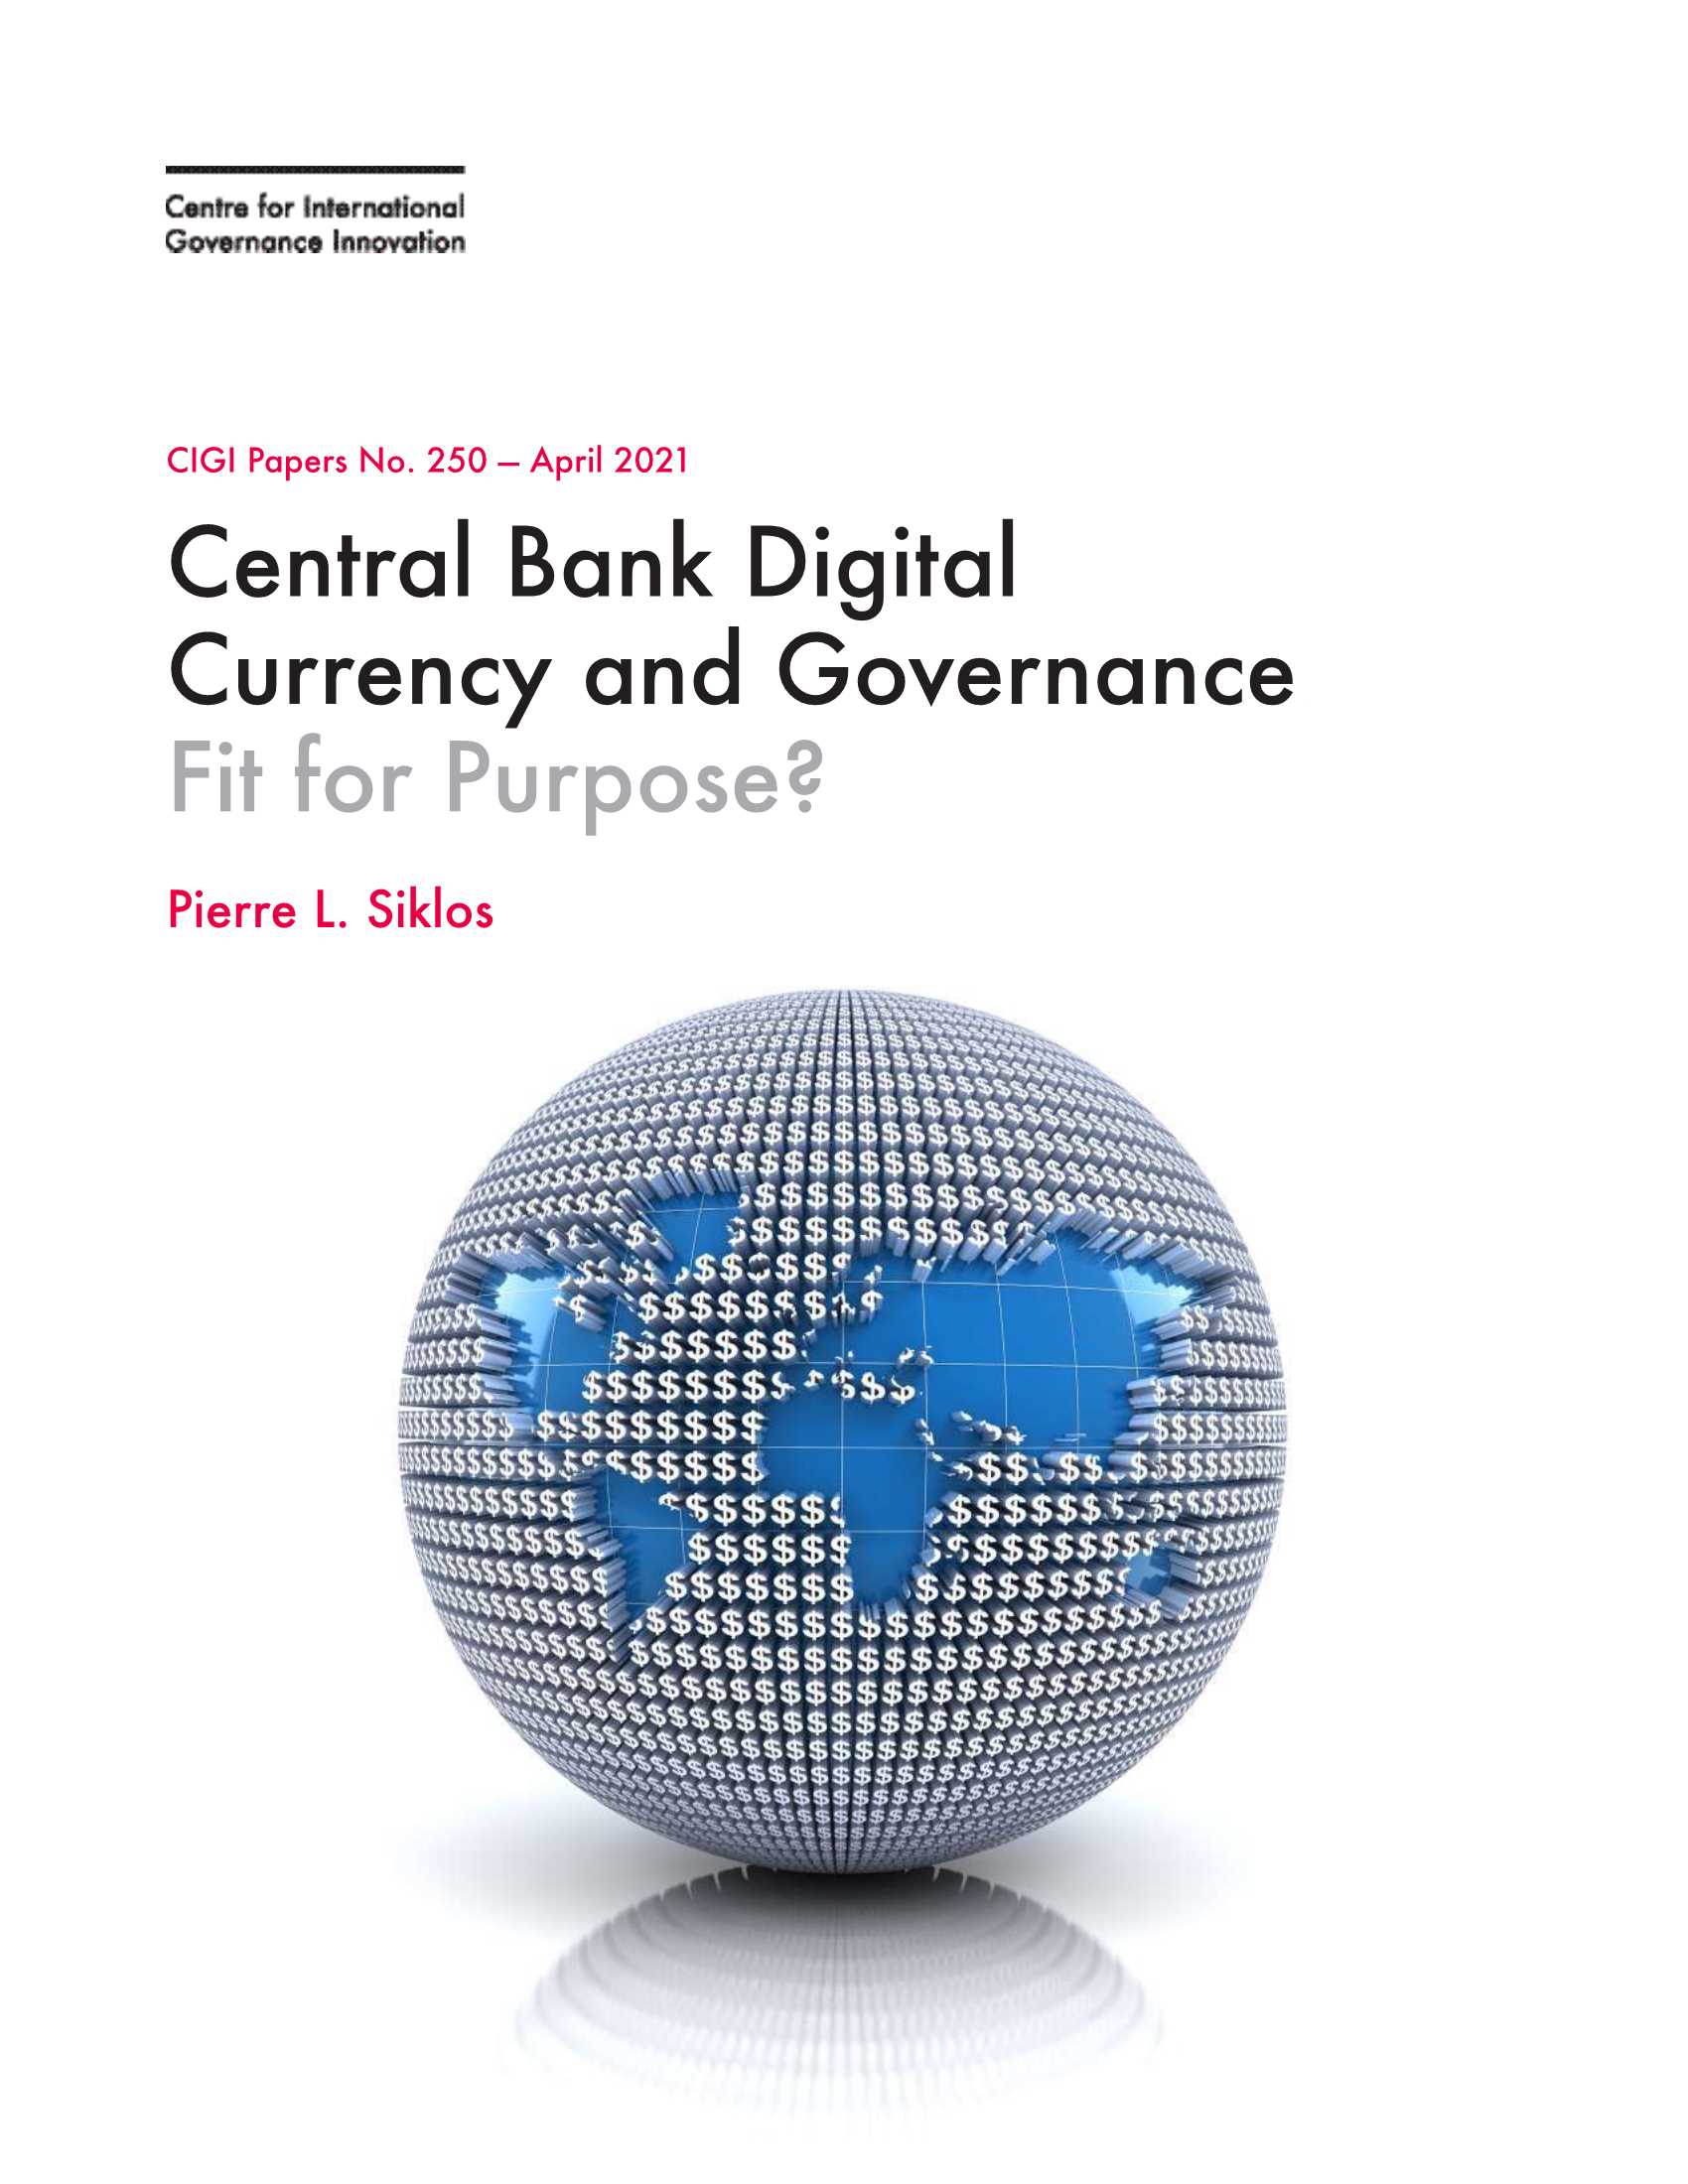 国际治理创新中心-中央银行数字货币与治理（英文）-2021.04-36页